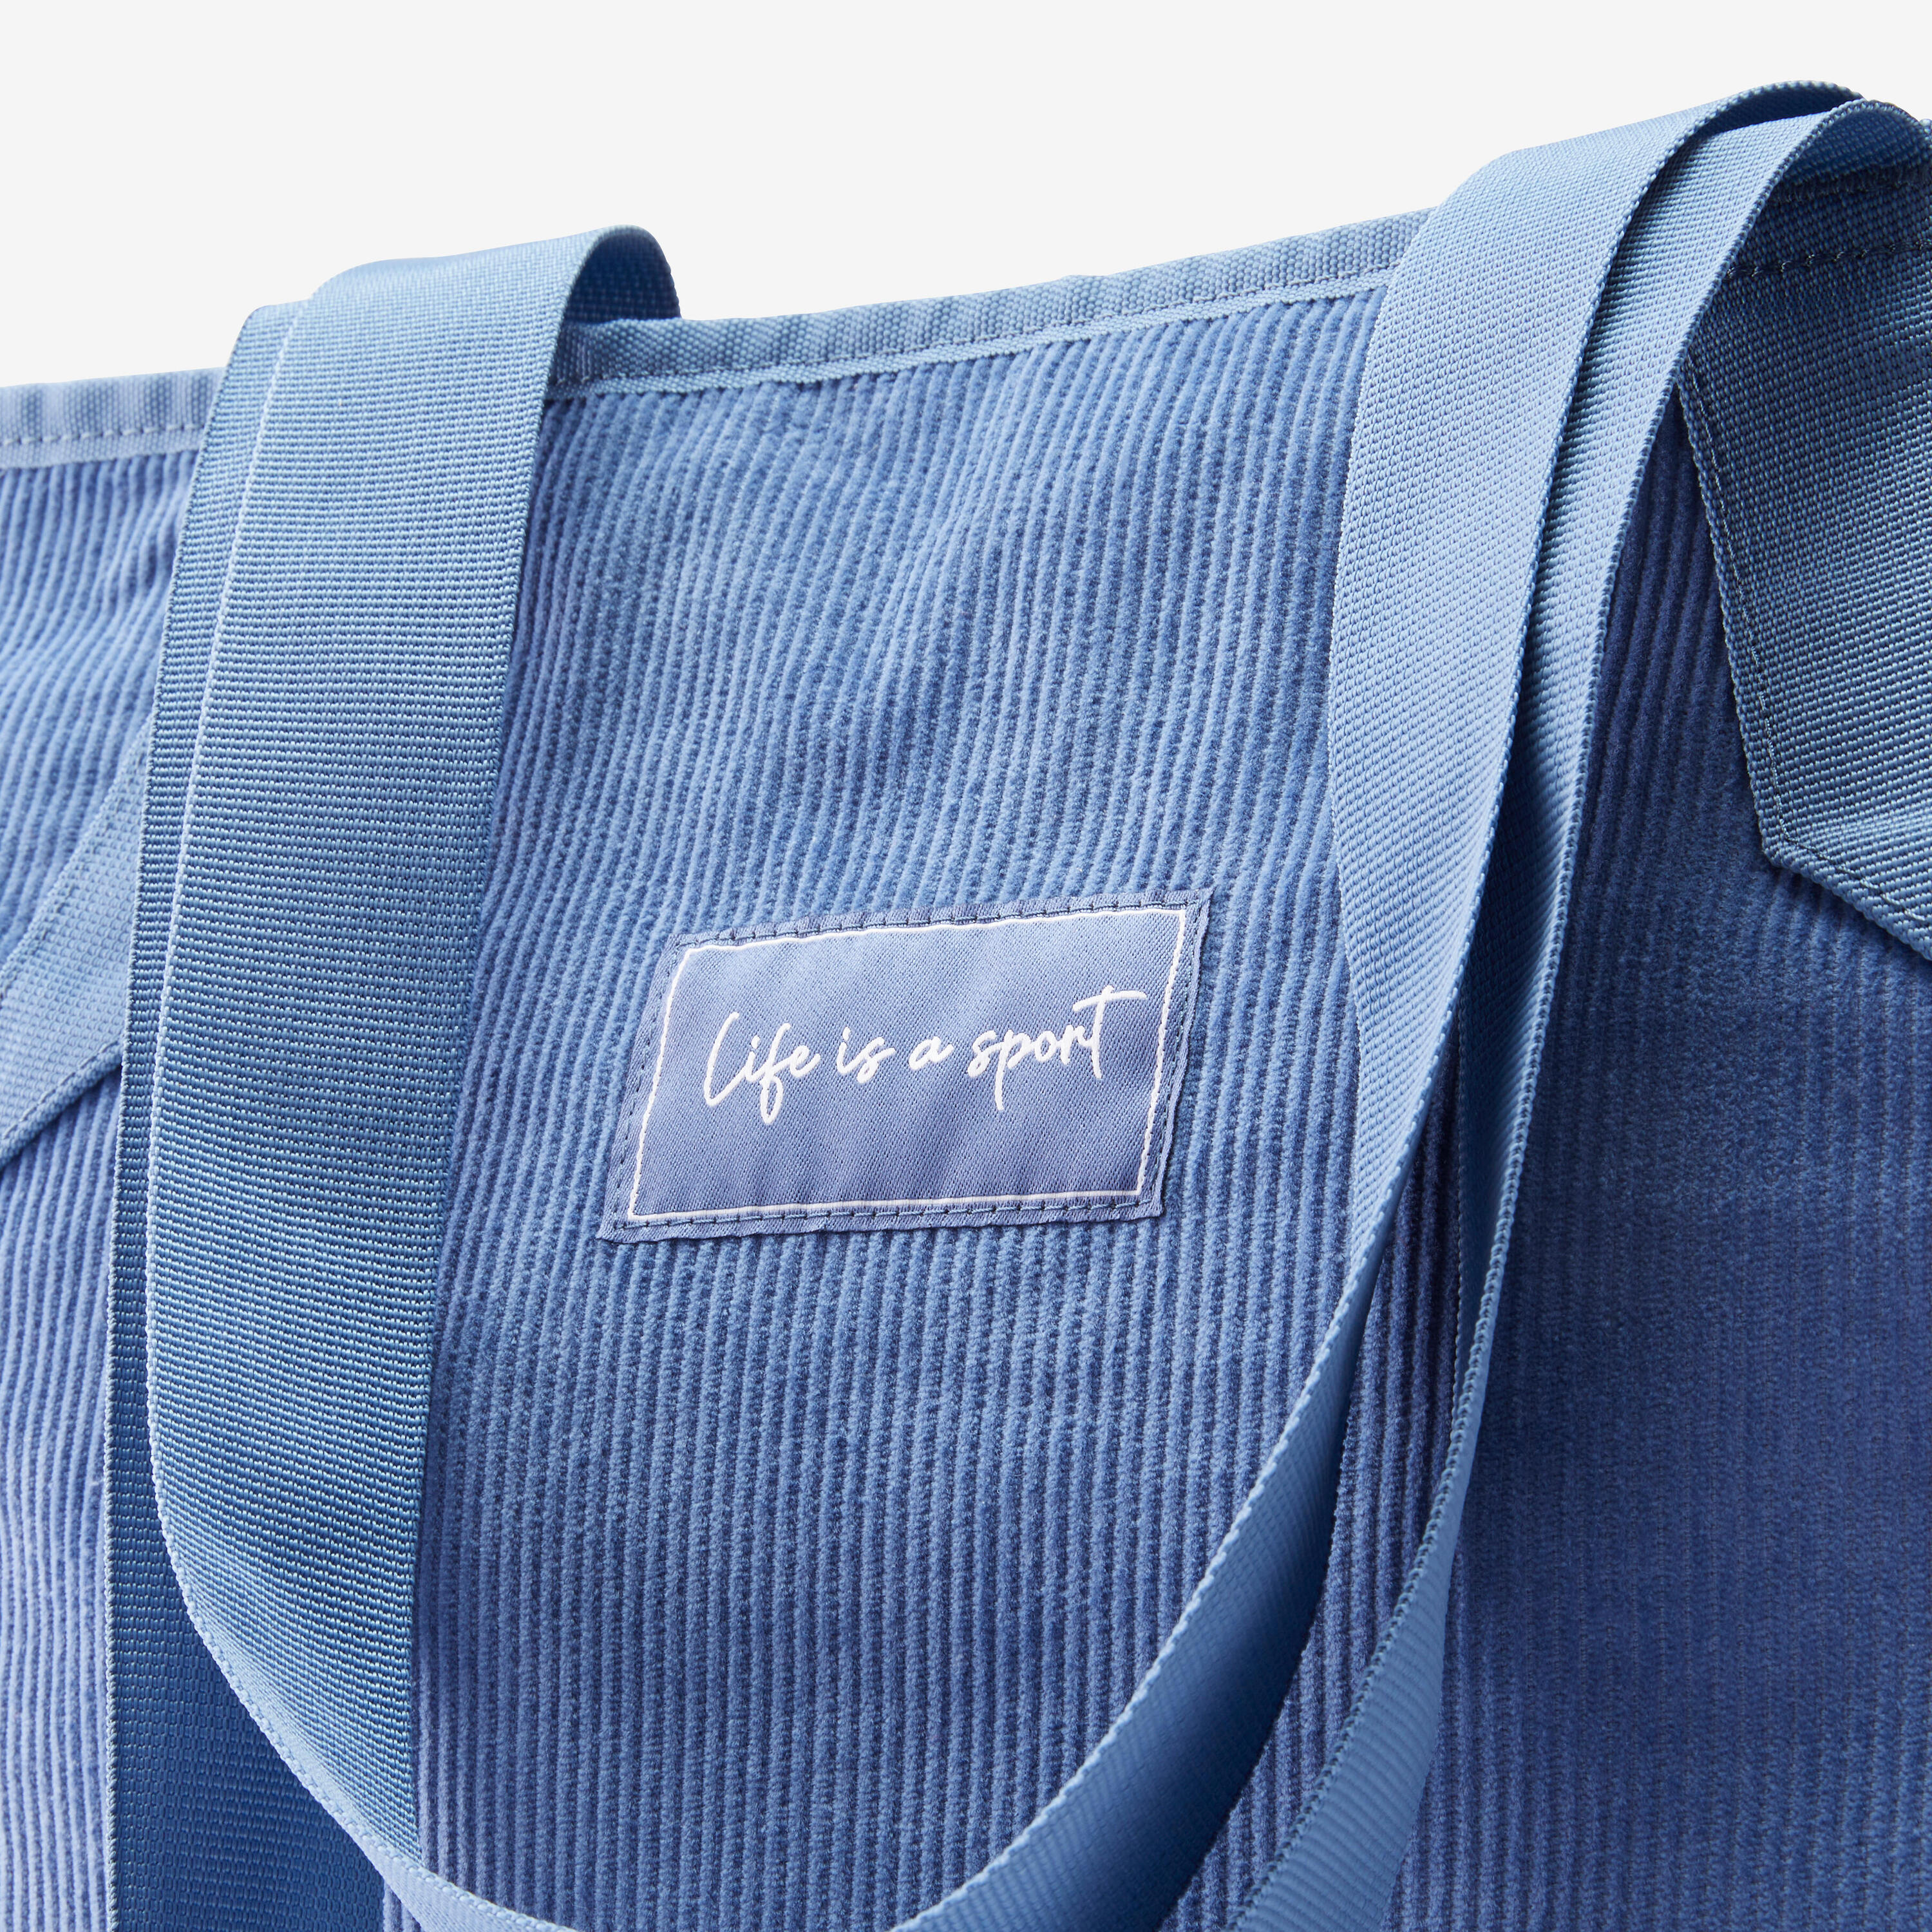 25 L Corduroy Sport Tote Bag - Storm Blue 9/9